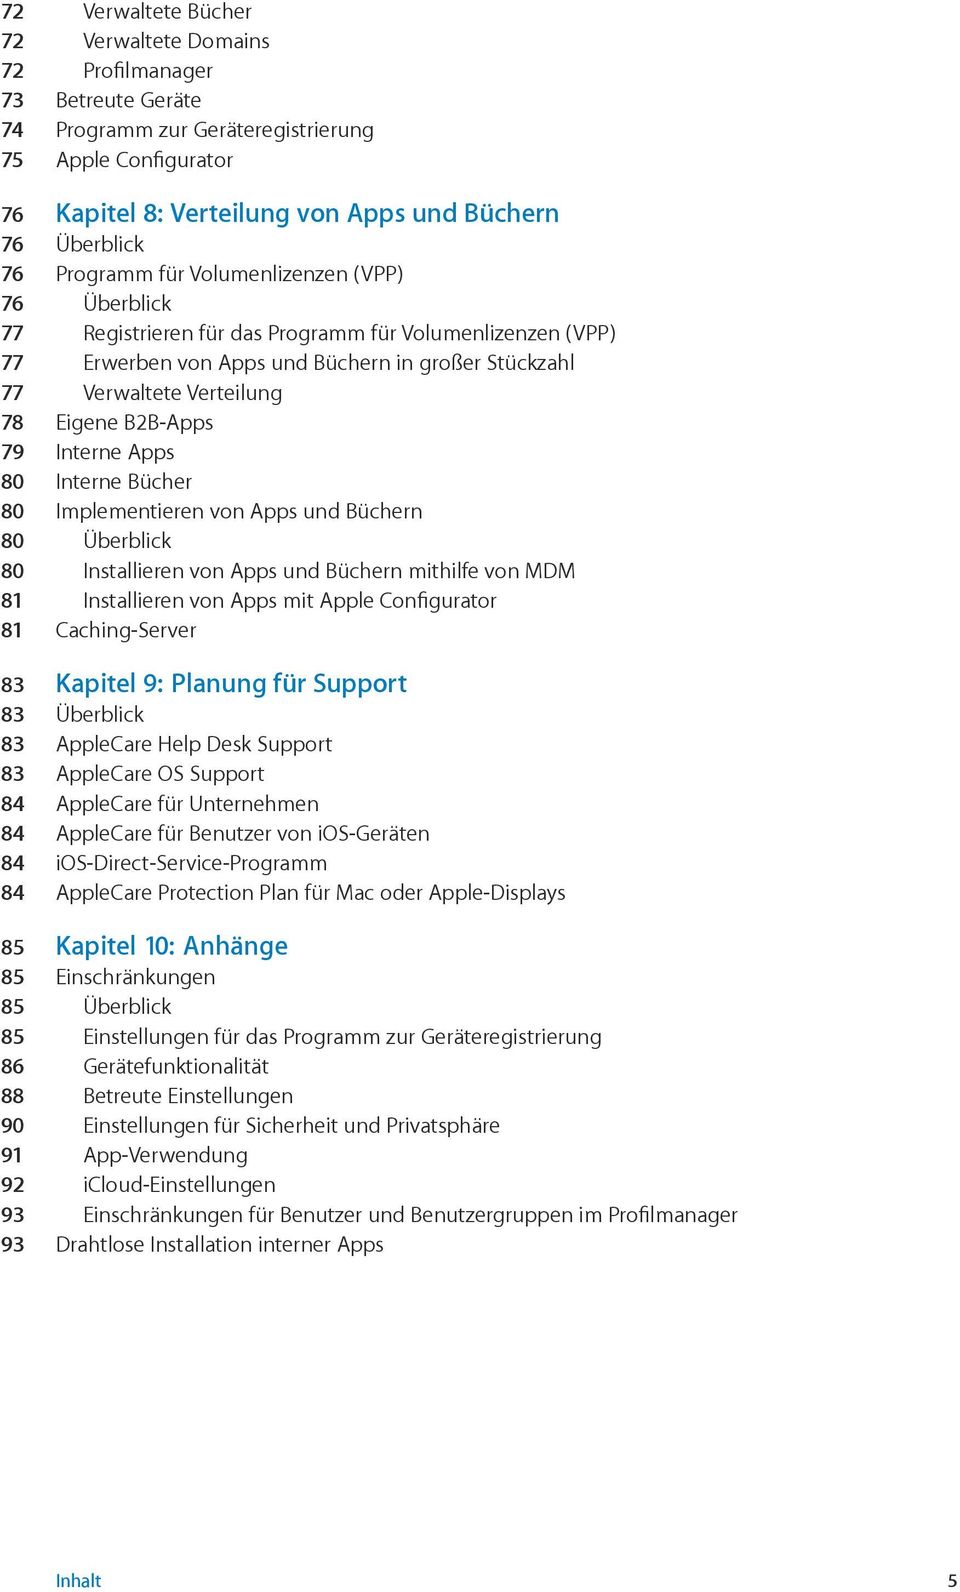 B2B-Apps 79 Interne Apps 80 Interne Bücher 80 Implementieren von Apps und Büchern 80 Überblick 80 Installieren von Apps und Büchern mithilfe von MDM 81 Installieren von Apps mit Apple Configurator 81